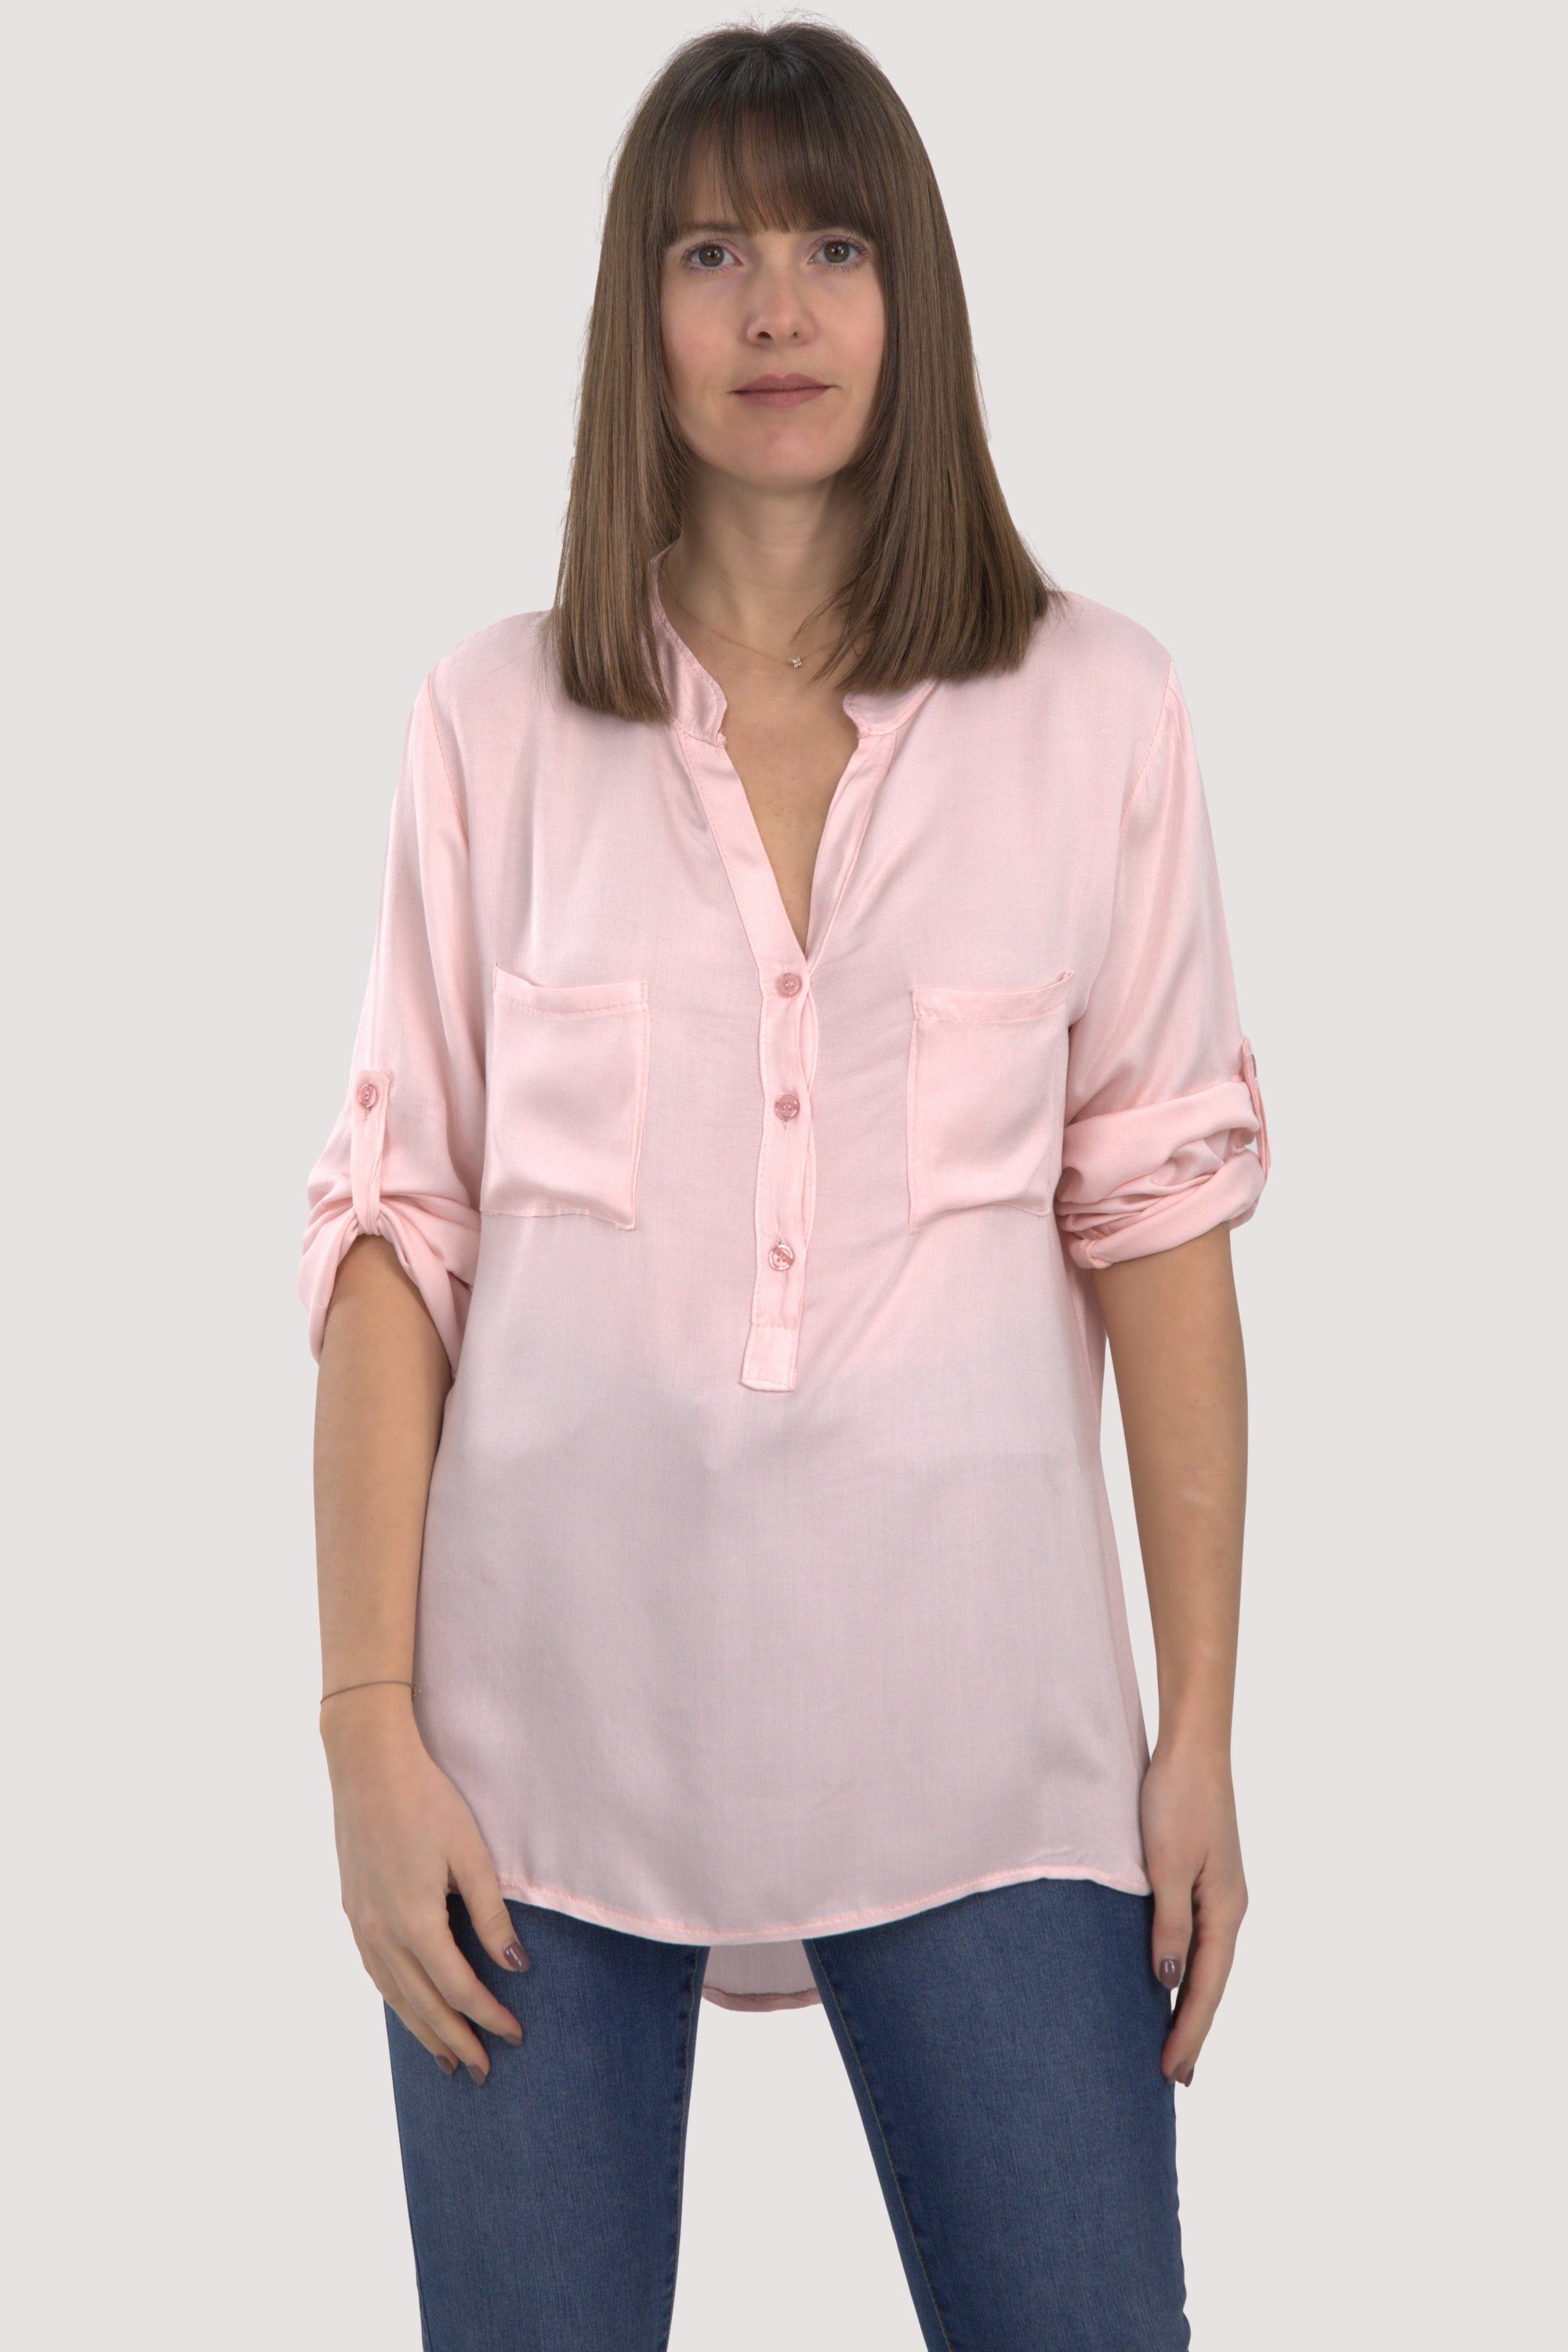 malito more than fashion Schlupfbluse 9015 Bluse mit krempelbaren 3/4 Ärmeln Einheitsgröße rosa | Schlupfblusen